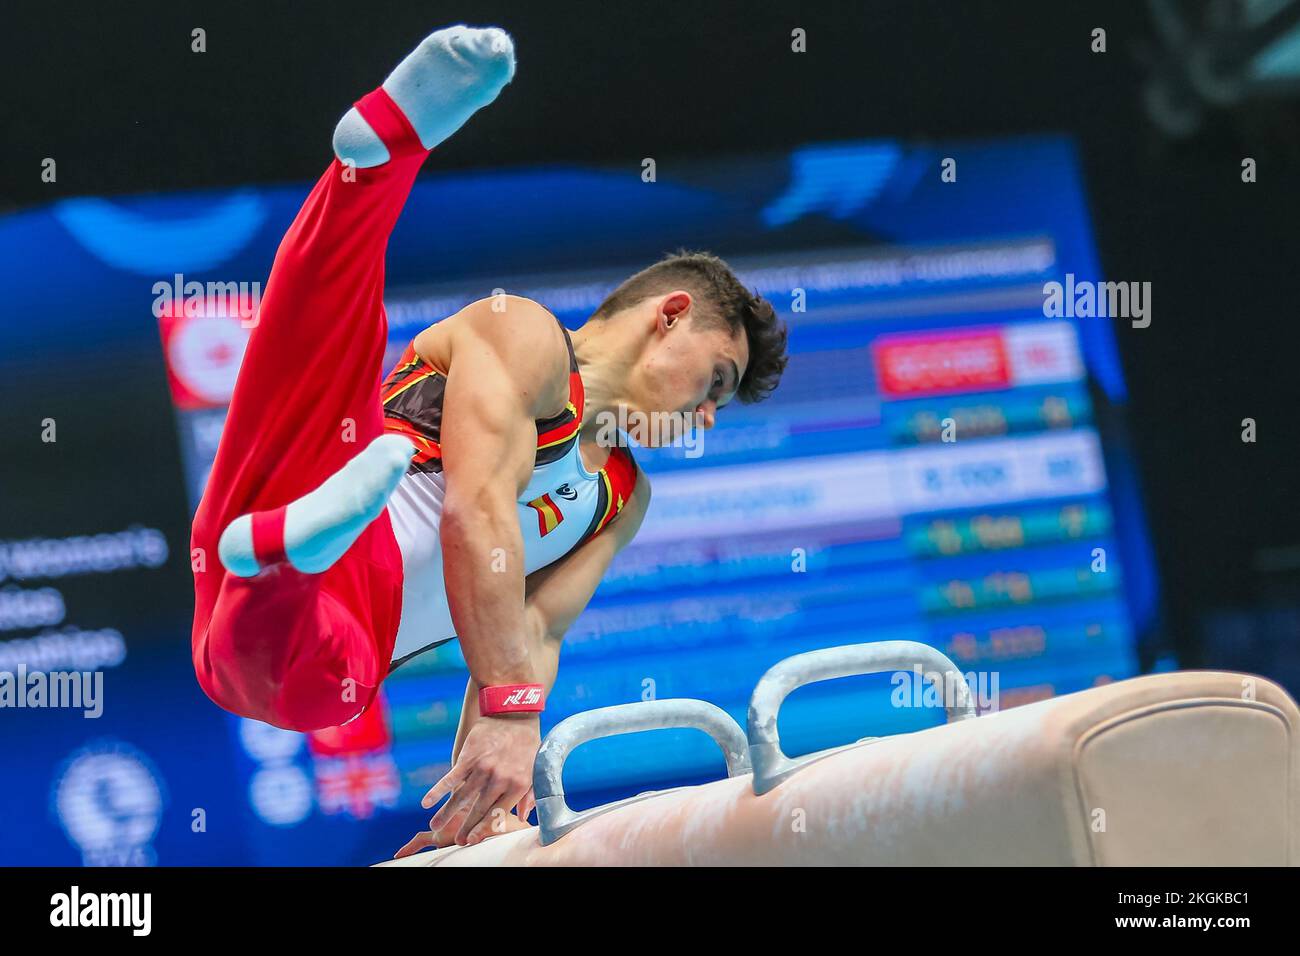 Szczecin, Pologne, 10 avril 2019: L'athlète olympique espagnol Mir Nicolau participe au concours du cheval de Pommel lors des championnats de gymnastique artistique Banque D'Images